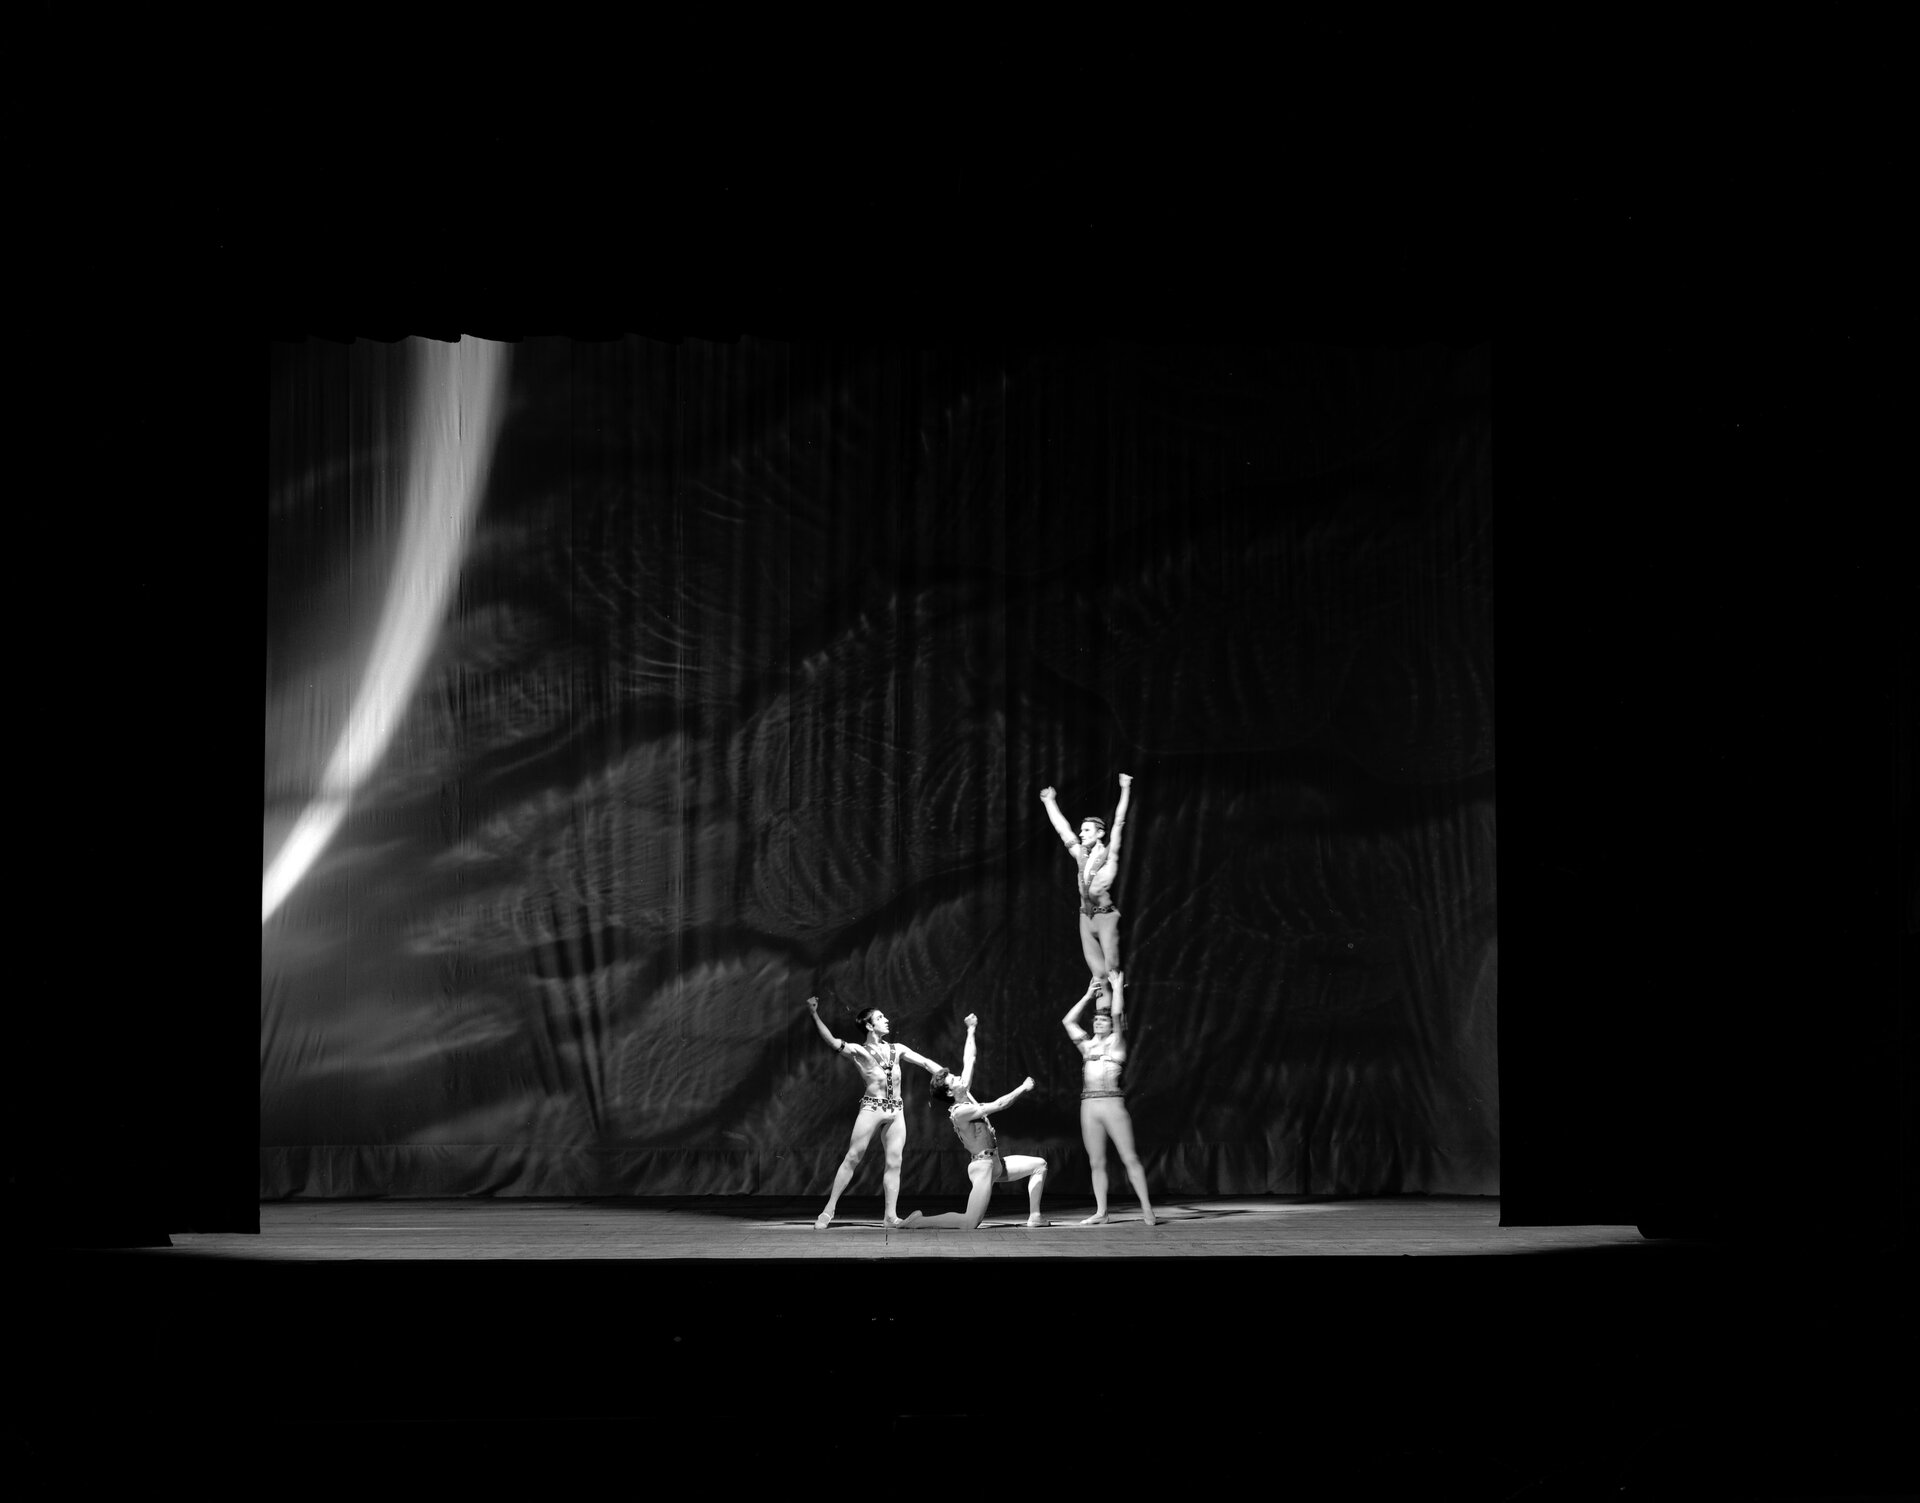 Czarno-białe zdjęcie spektaklu baletowego wykonane przez fotografa André Cros. Na zdjęciu widoczna jest scena, na której czterej mężczyźni w obcisłych strojach wykonują akrobacje. Po prawej stronie sceny stoi mężczyzna, na którego ramionach stoi kolejny z rękoma wzniesionymi ku górze. Tworzą pewnego rodzaju wieżę. Dwaj pozostali znajdują się po lewej stronie sceny, jeden stoi, drugi klęczy. Obaj wznoszą ręce w kierunku mężczyzny znajdującego się na górze. 